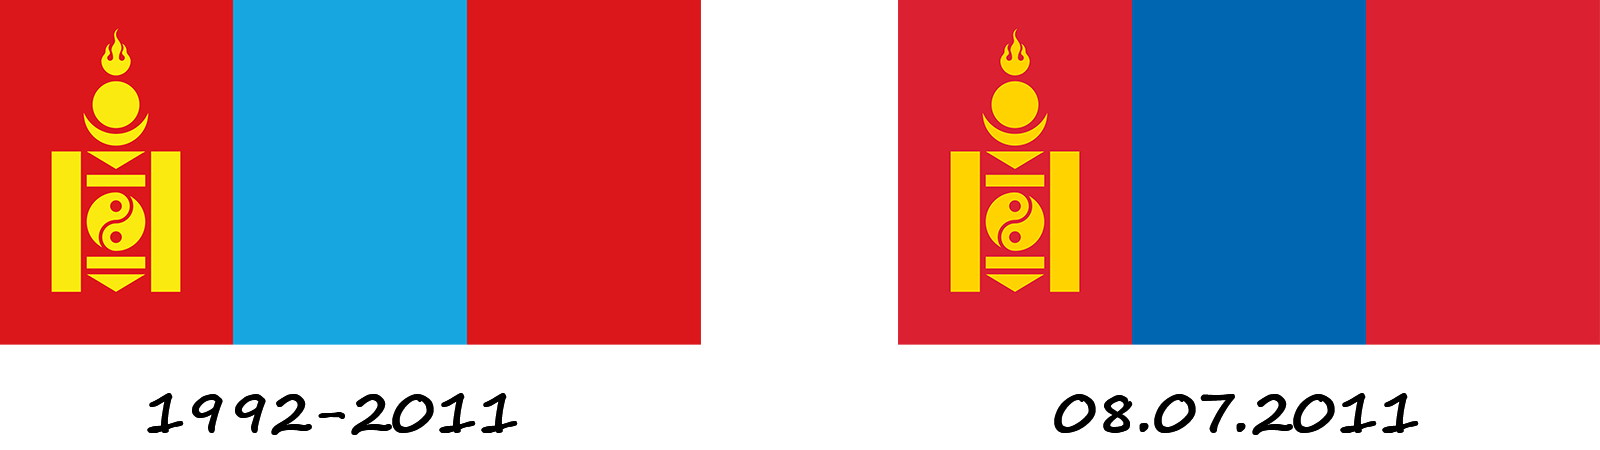 Historia de la bandera de Mongolia